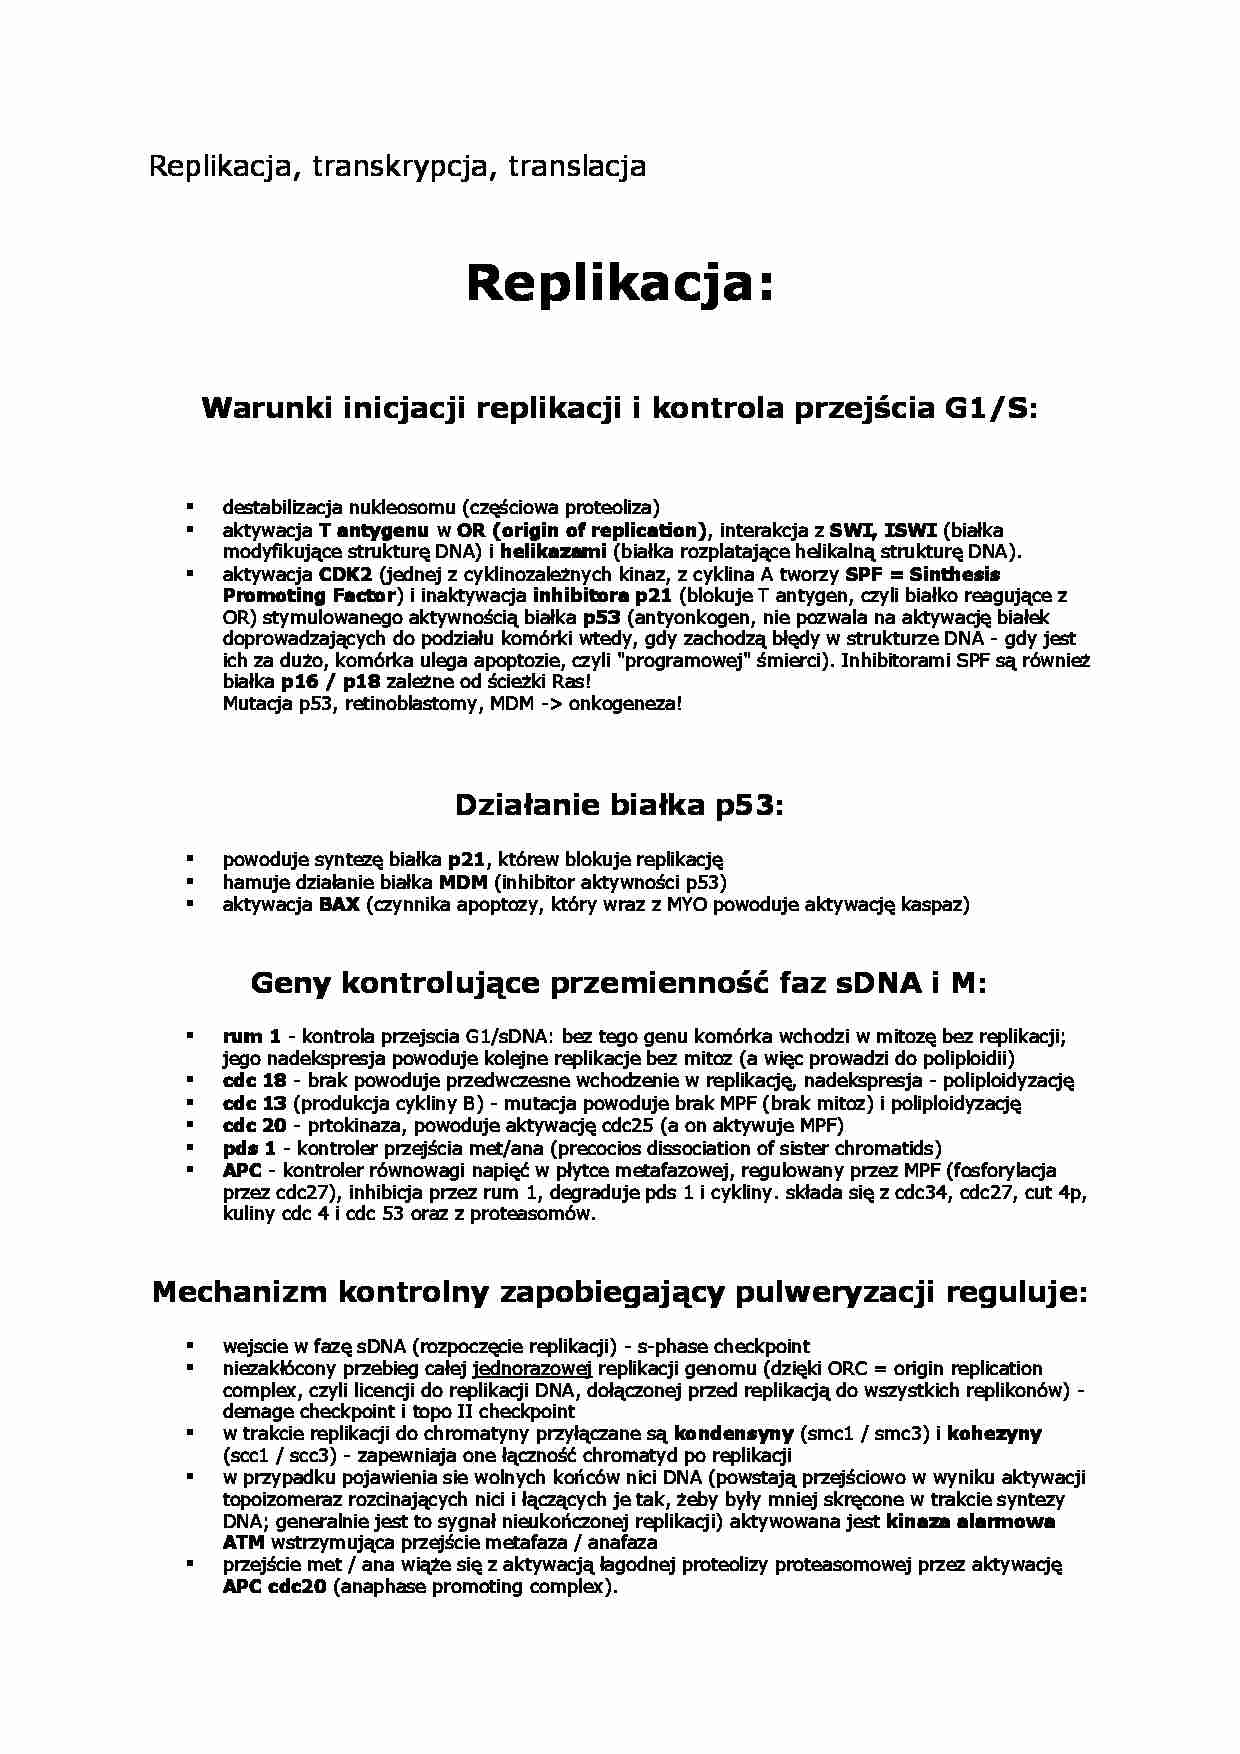 Replikacja, transkrypcja, translacja - wykład - strona 1